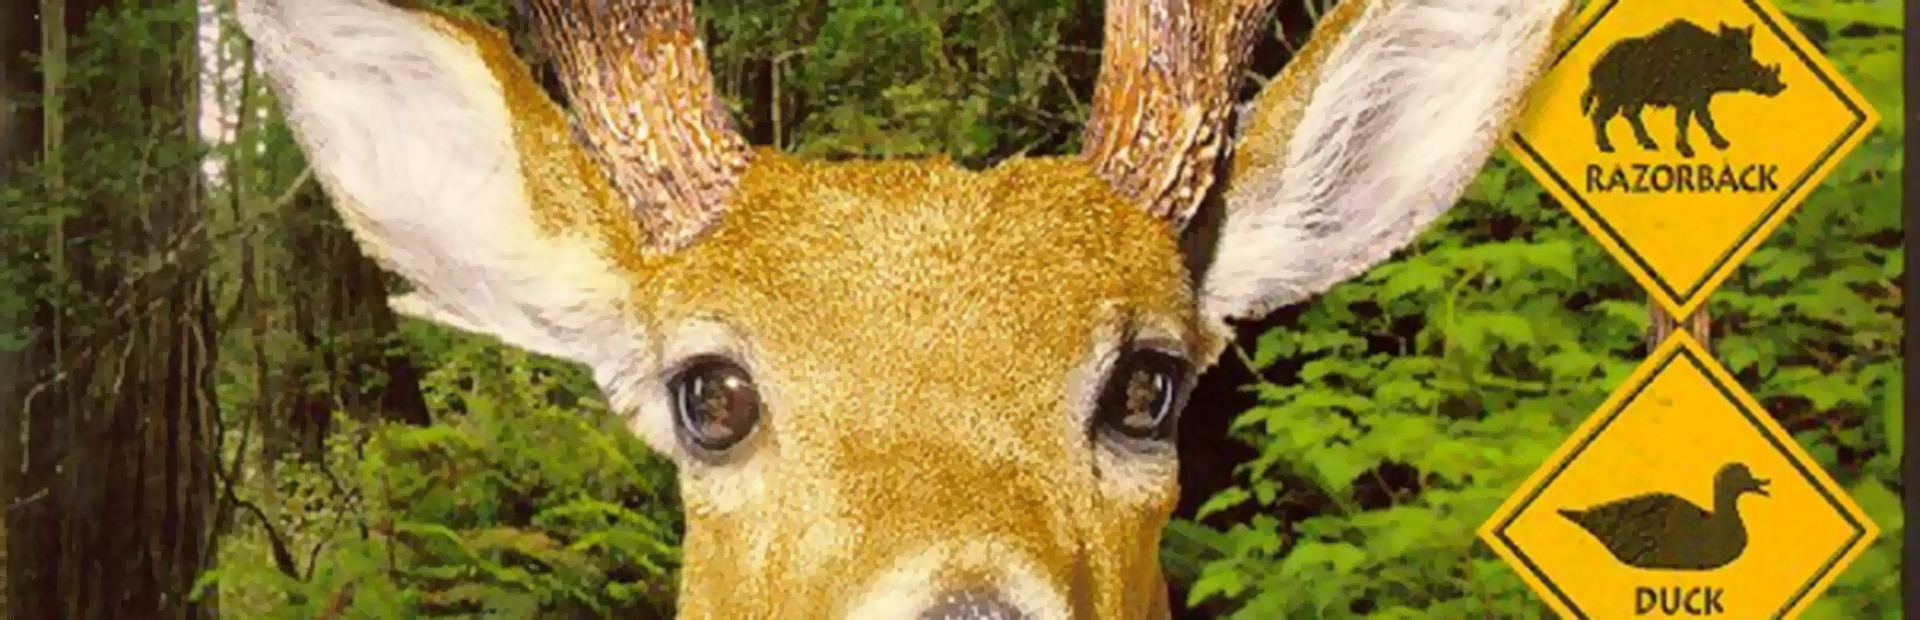 Redneck Deer Huntin' cover image